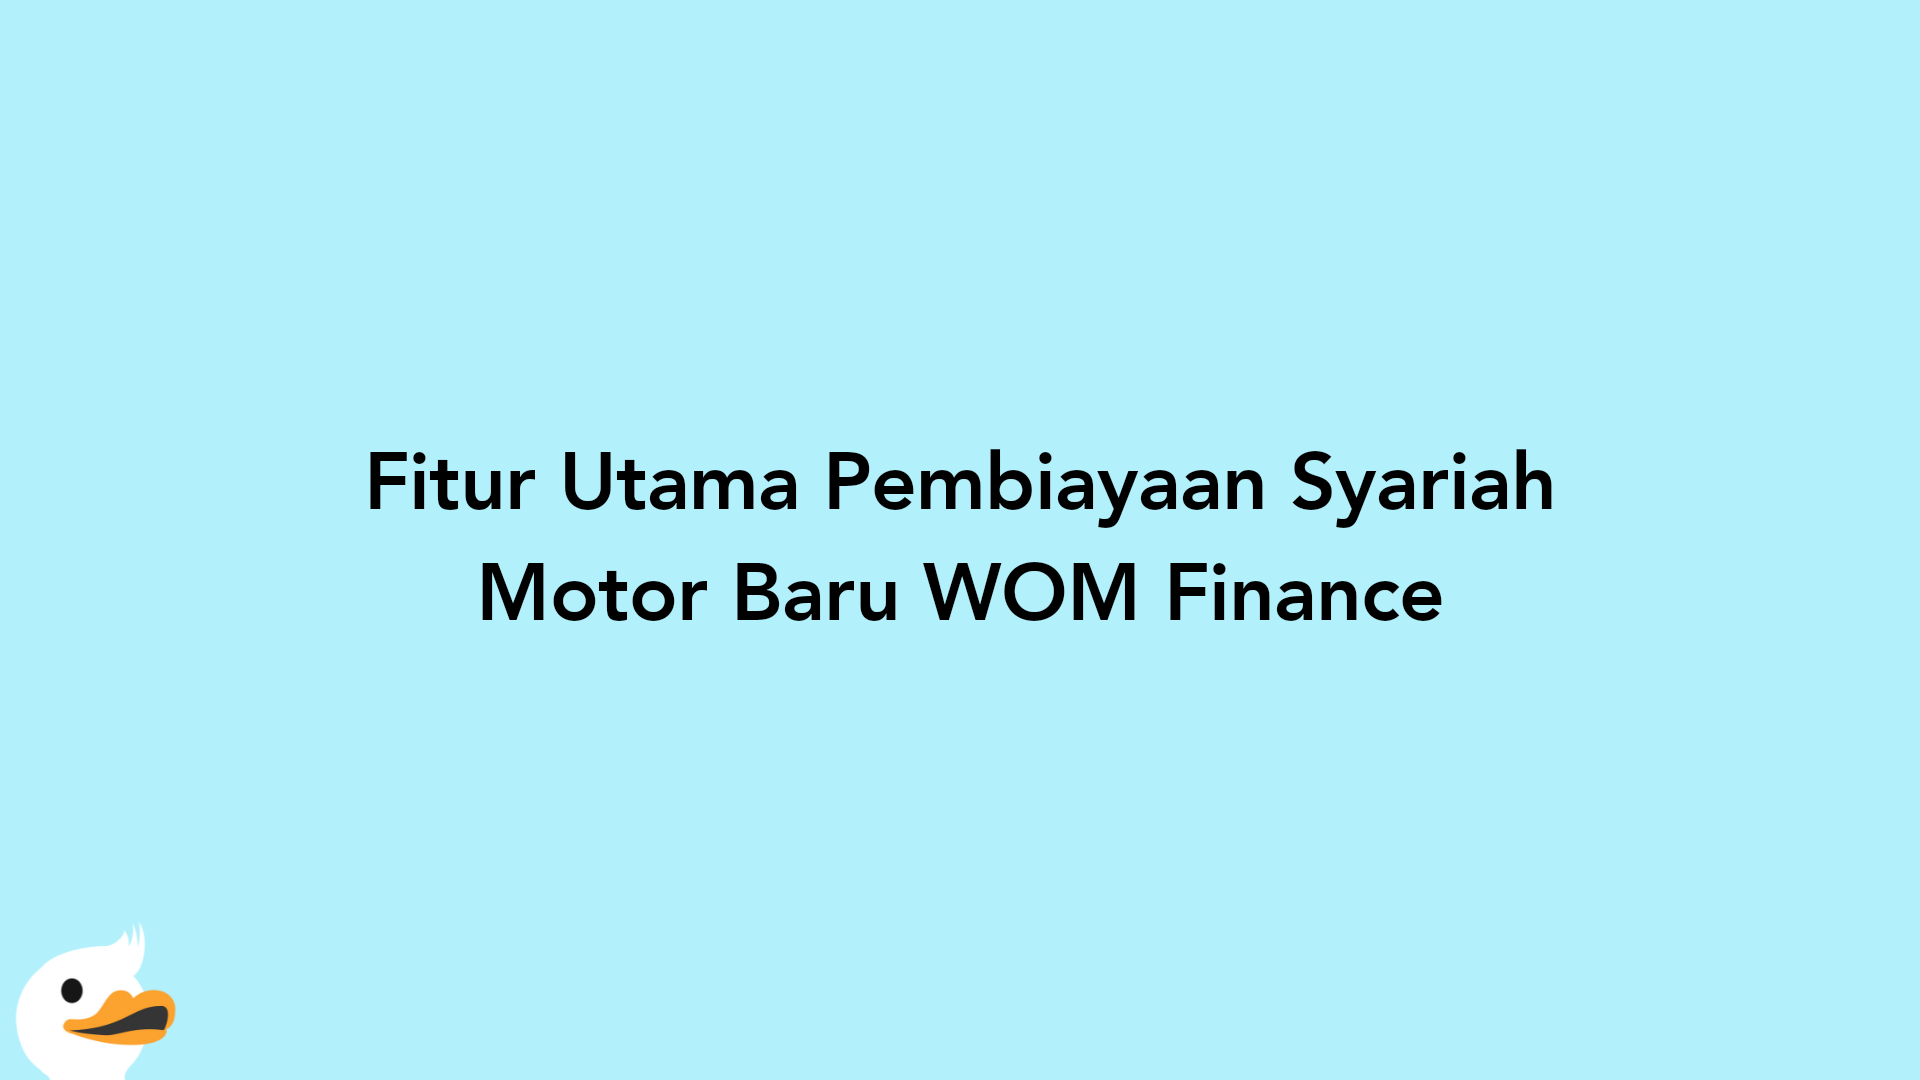 Fitur Utama Pembiayaan Syariah Motor Baru WOM Finance